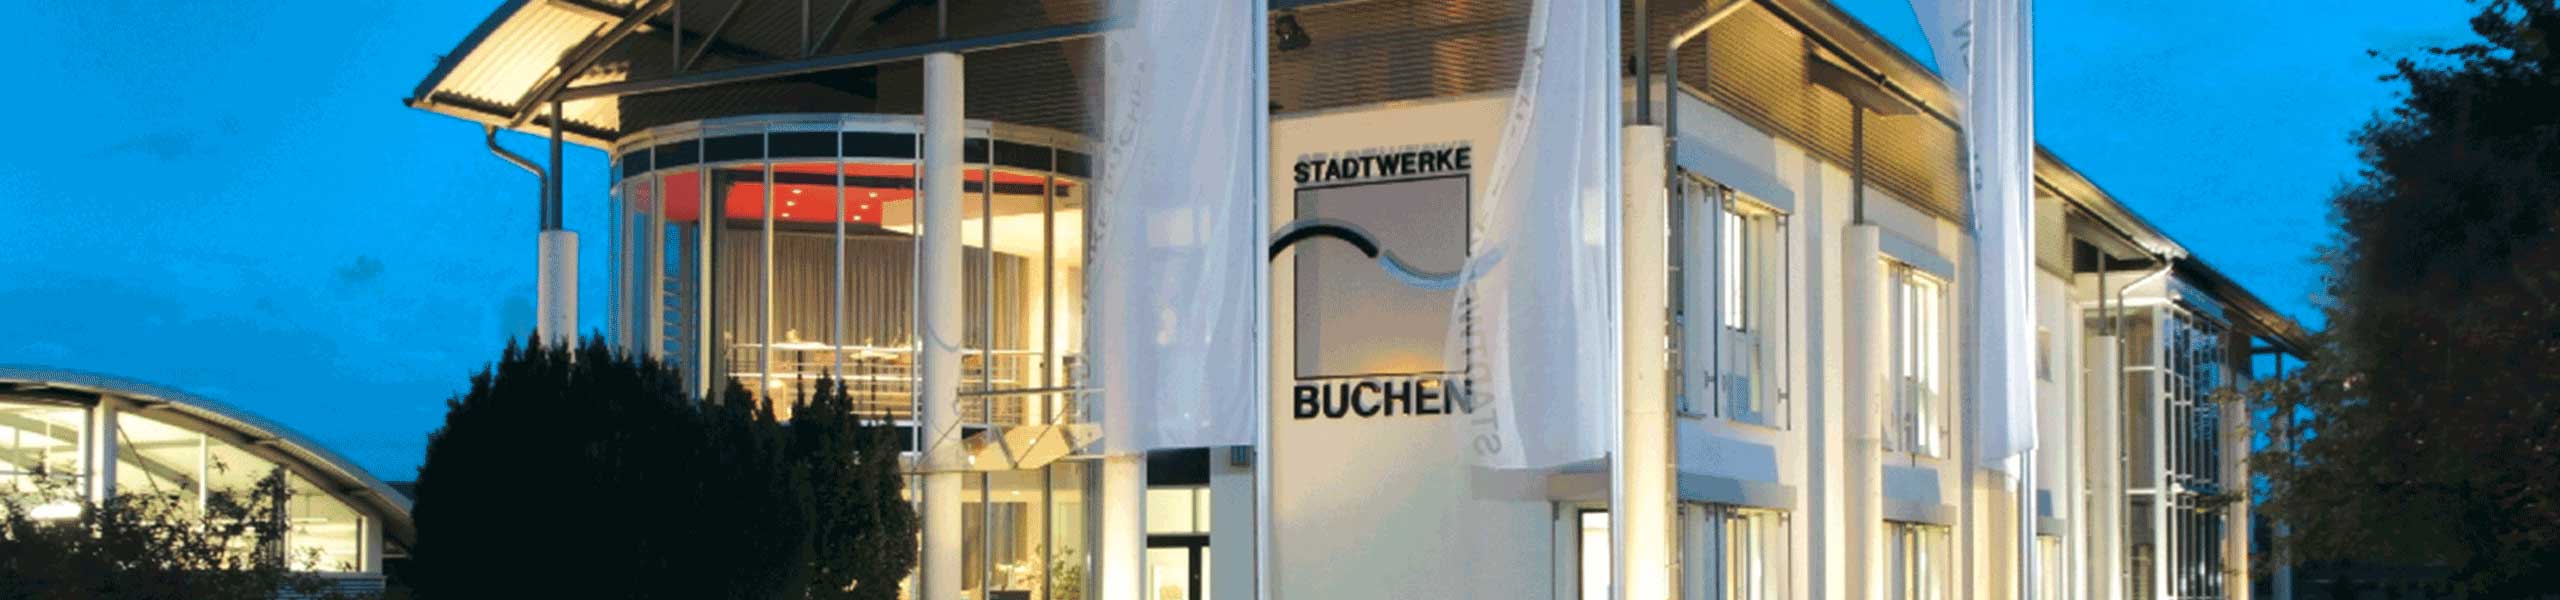 Stadtwerke Buchen GmbH & Co KG - Die Energiepreisbremse-Gesetze in der Übersicht